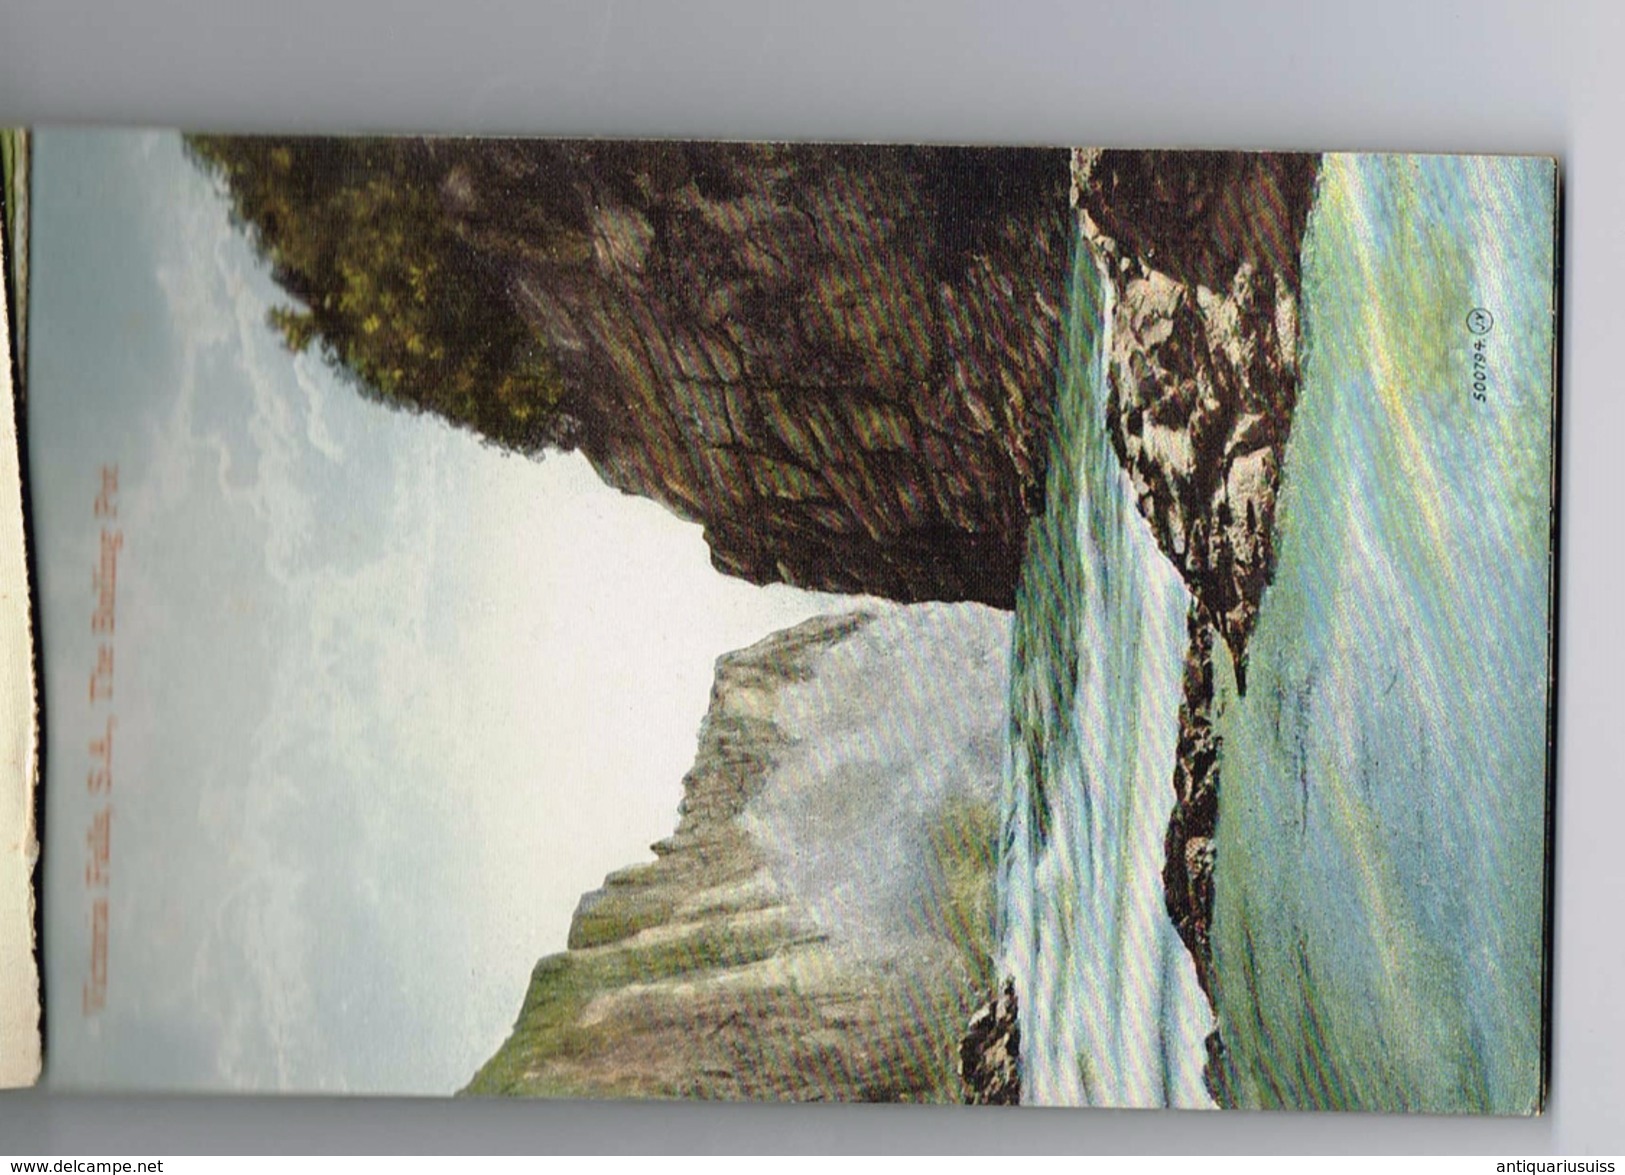 Victoria Falls, Twalve Beautiful Postcards ,  12 cartes postales detachables